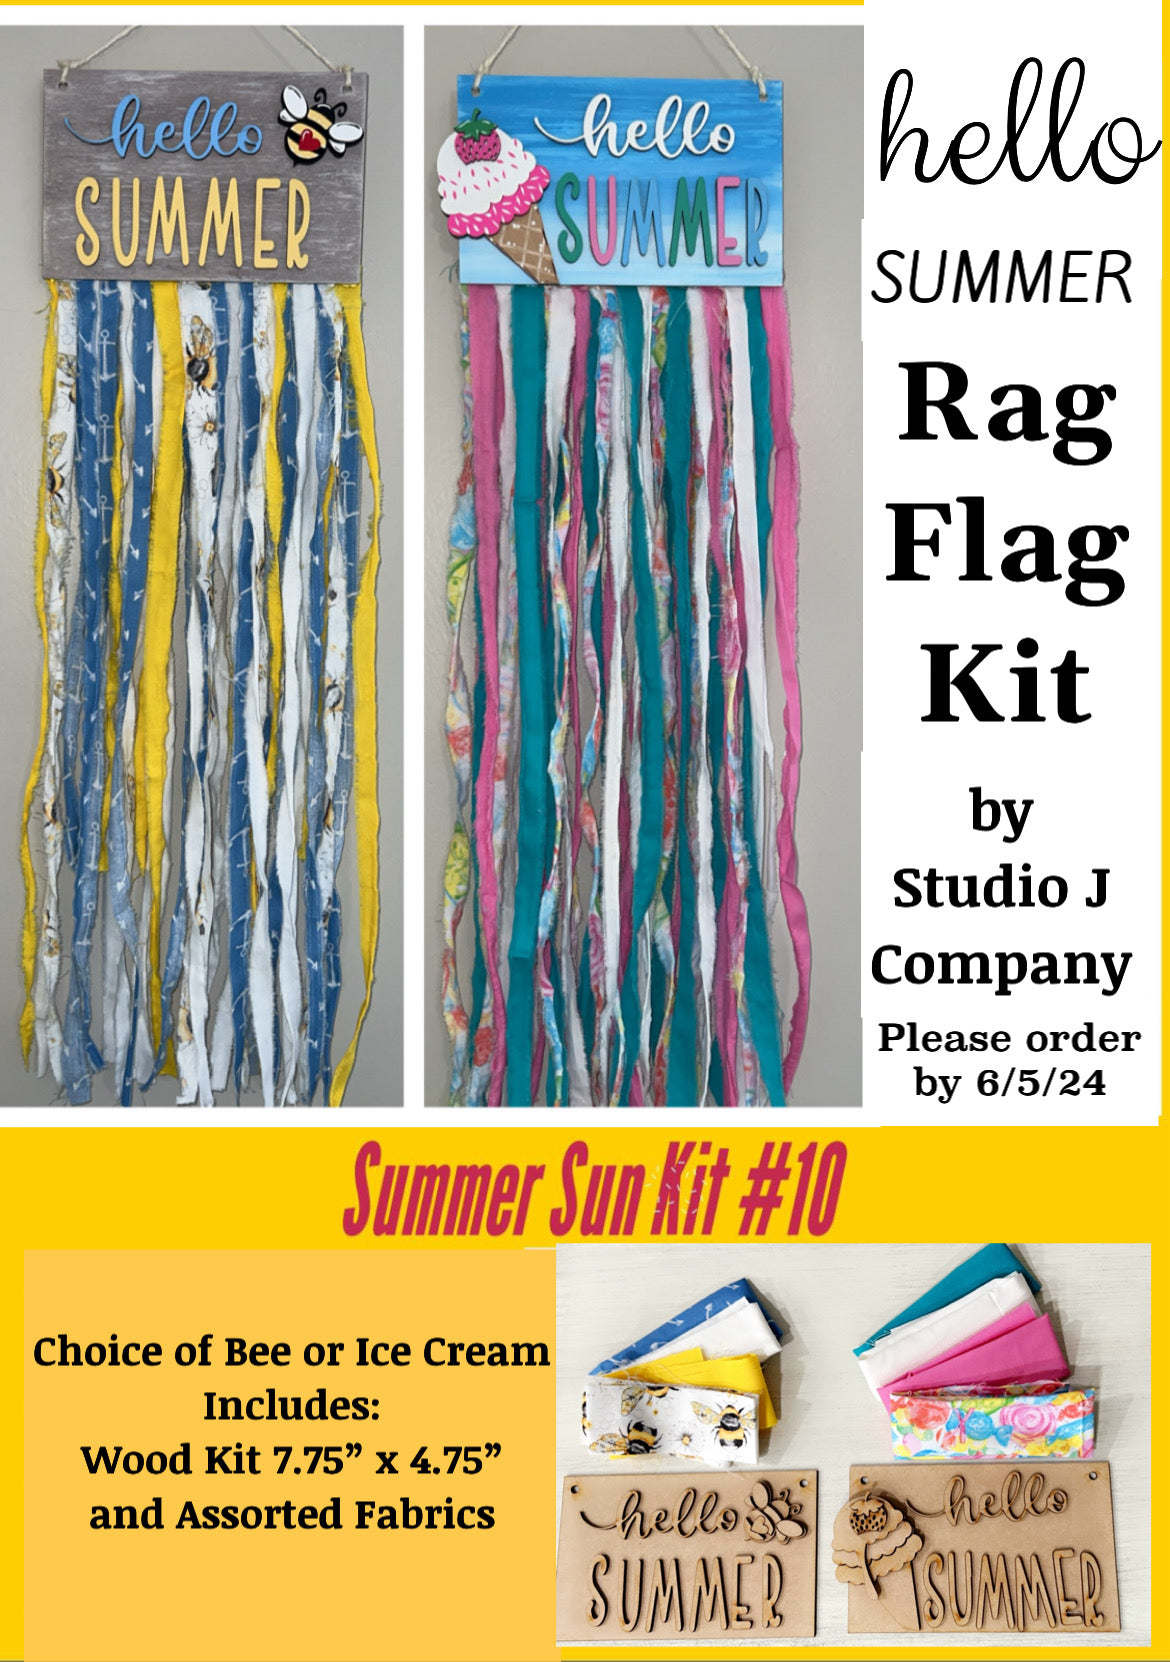 Summer Sun Event Kit - hello SUMMER Rag Flag Kit